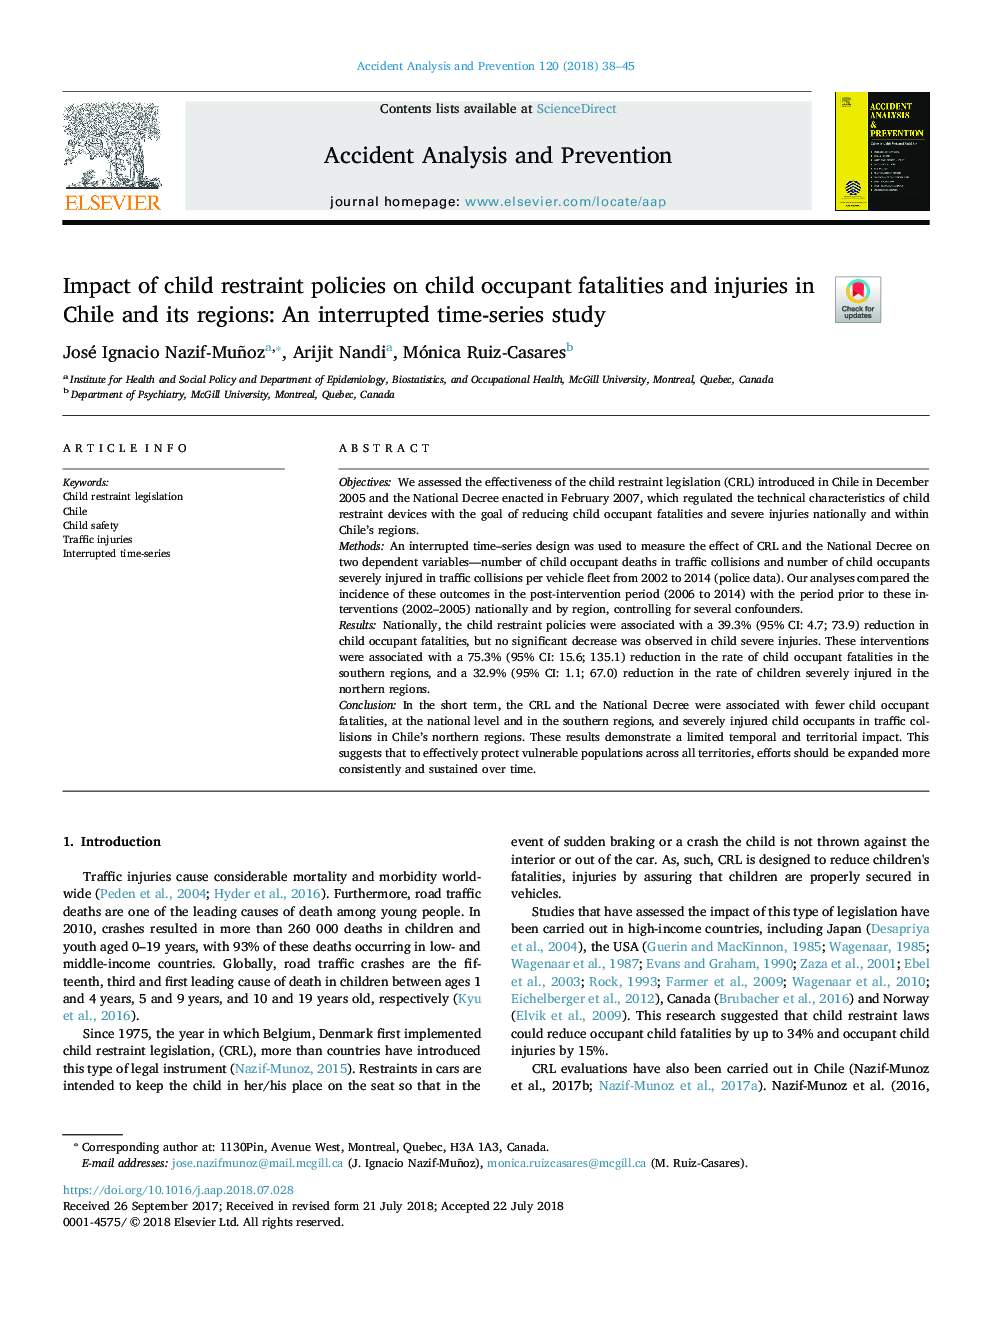 تأثیر سیاست های مهار کودک در مورد تلفات و صدمات جسمی کودکان در شیلی و مناطق آن: مطالعه سری زمانی وقفه ای 